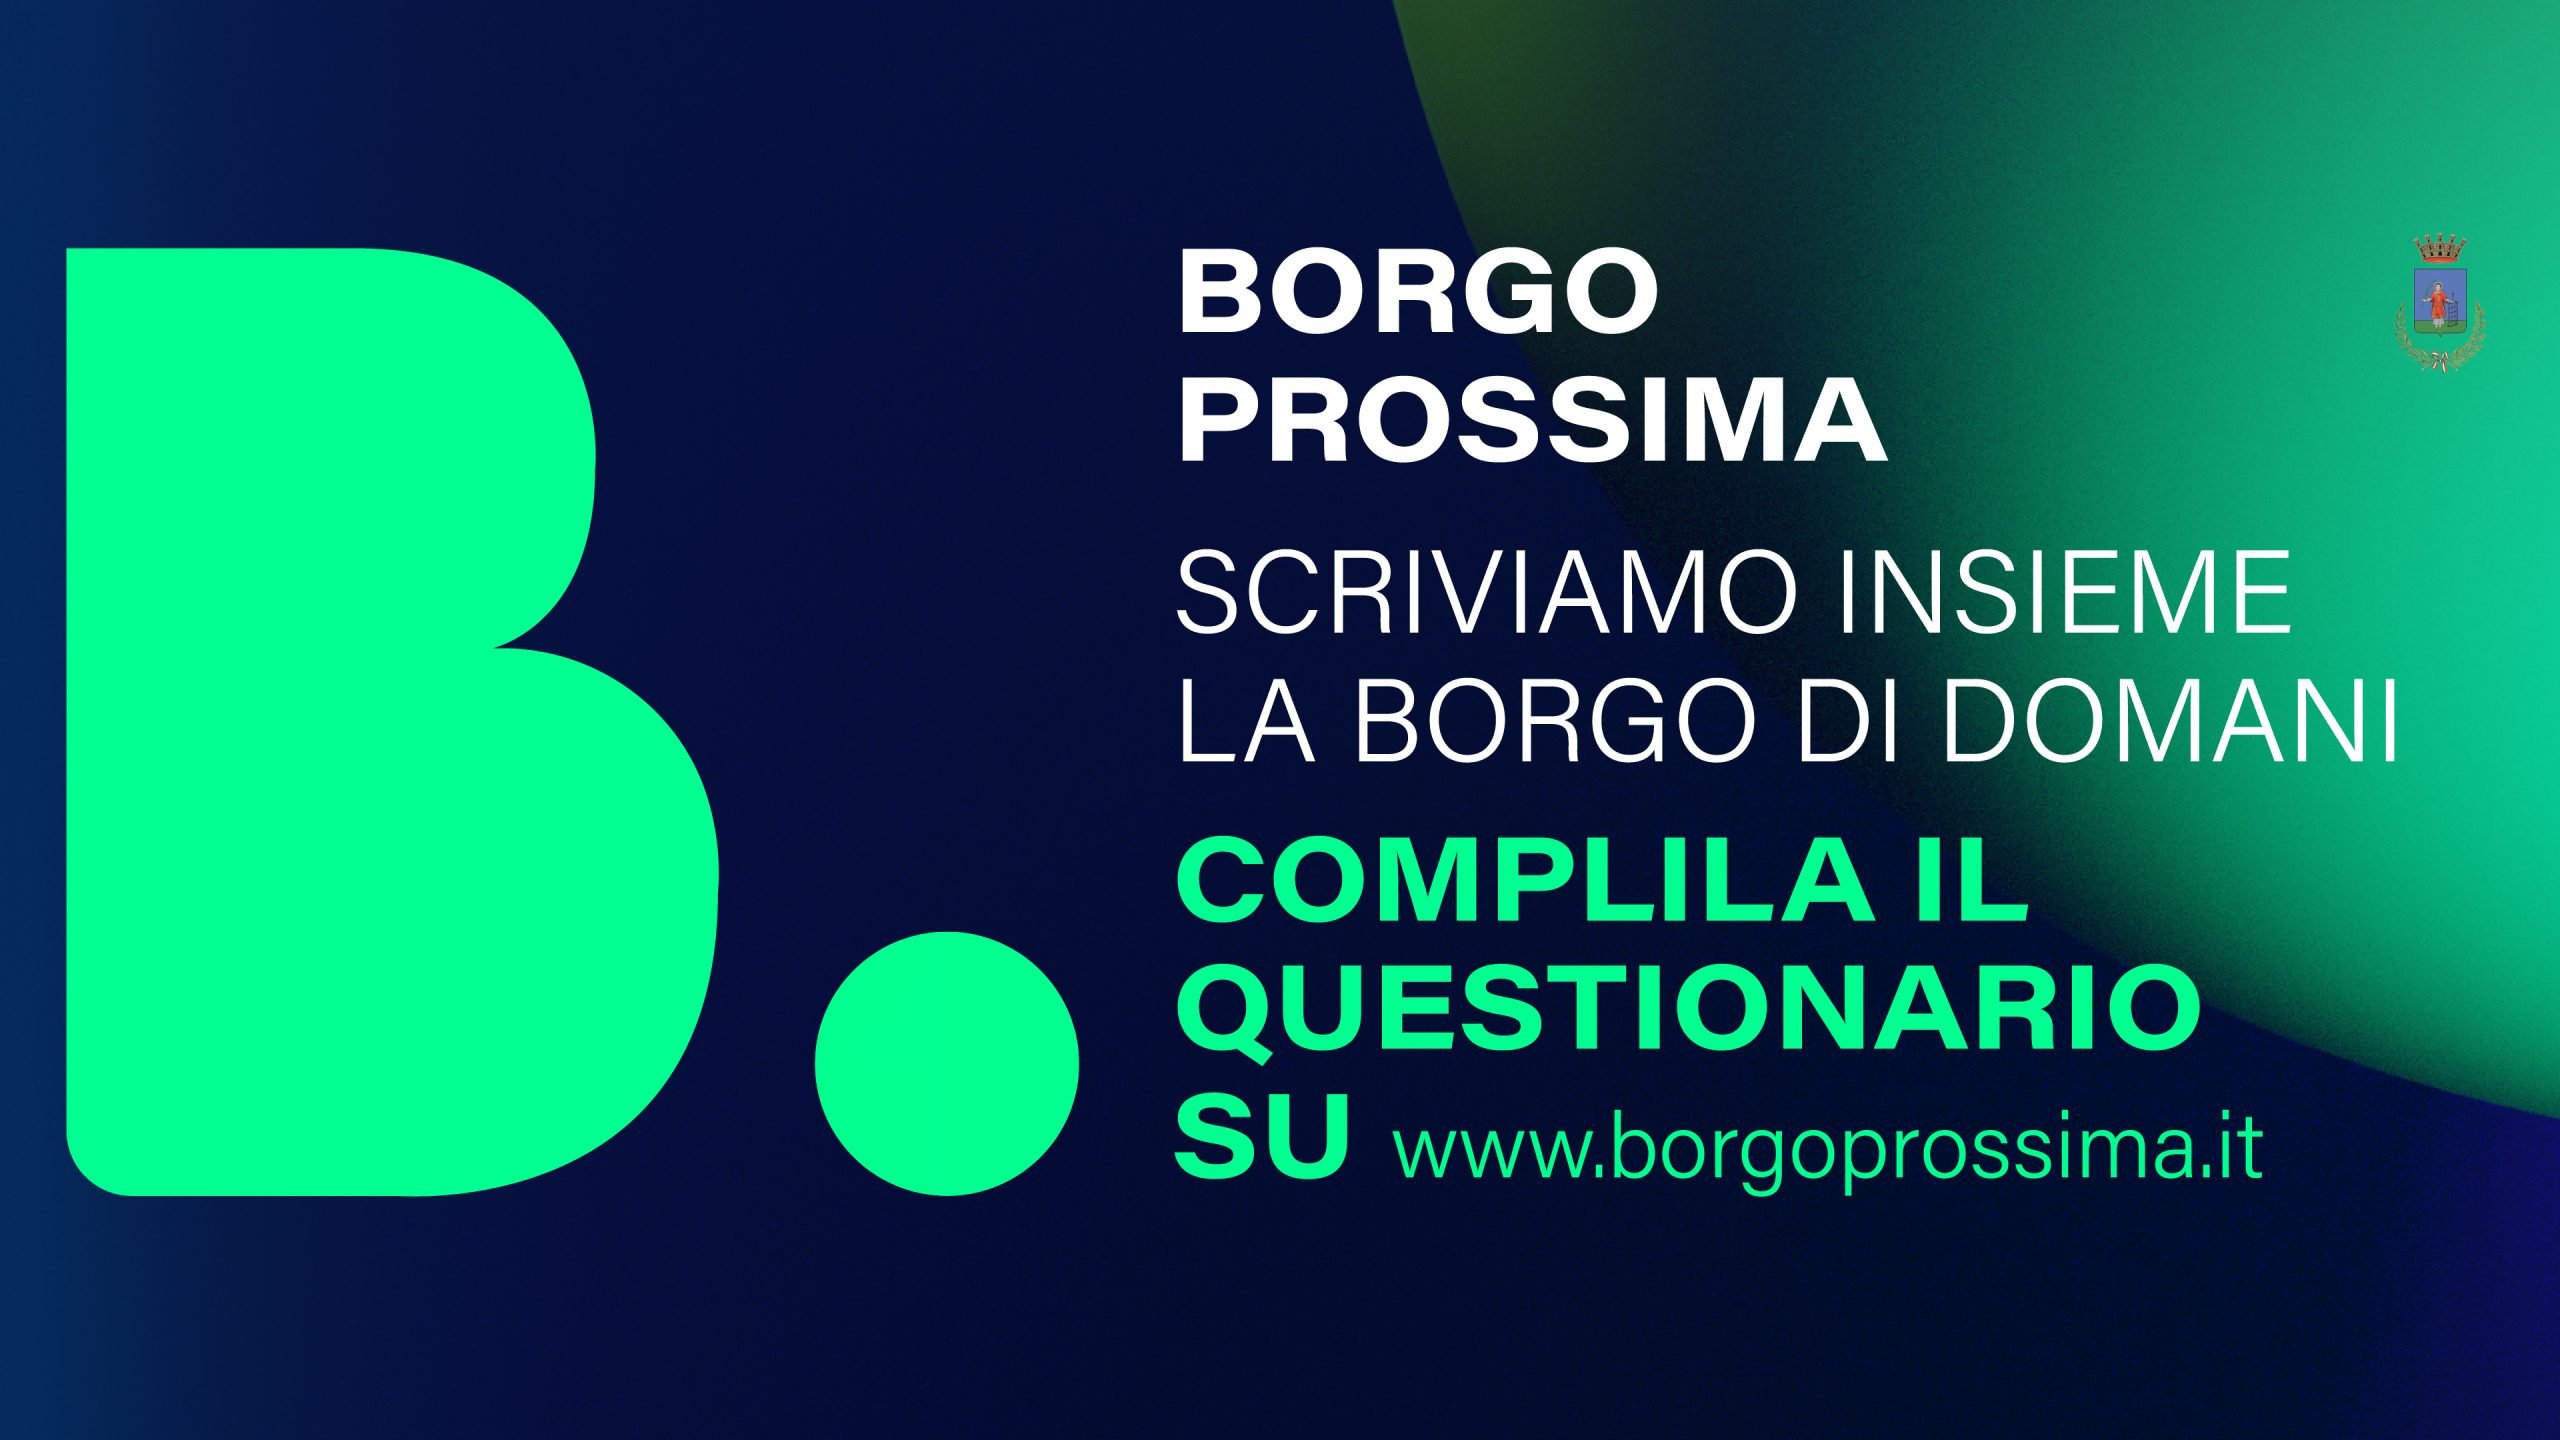 #Borgoprossima